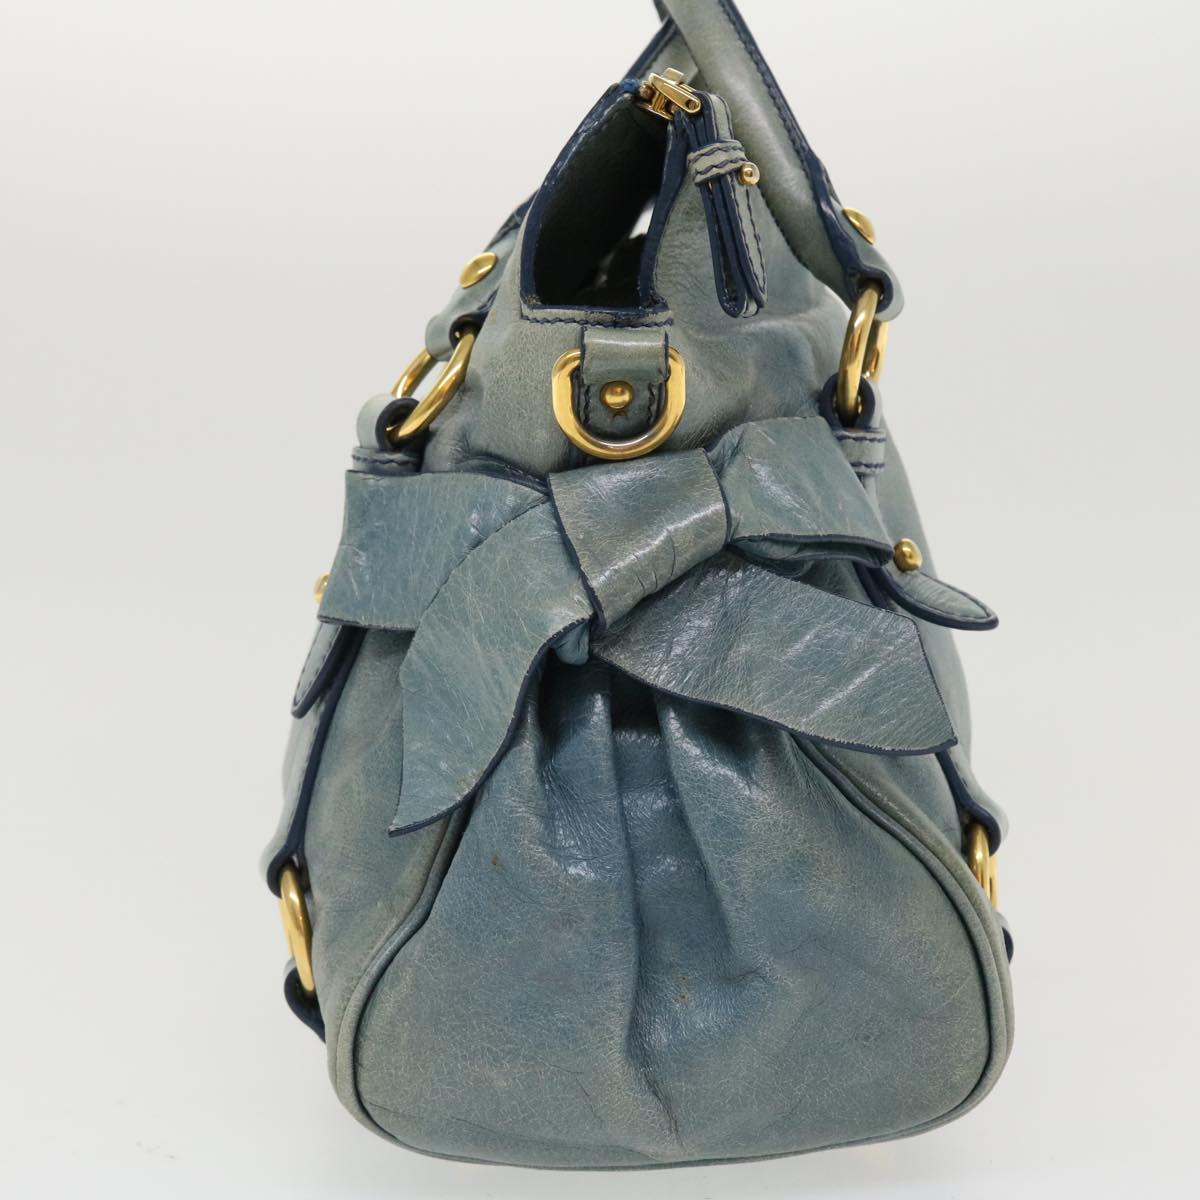 Miu Miu Shoulder Bag Leather 2way Blue Auth am3868